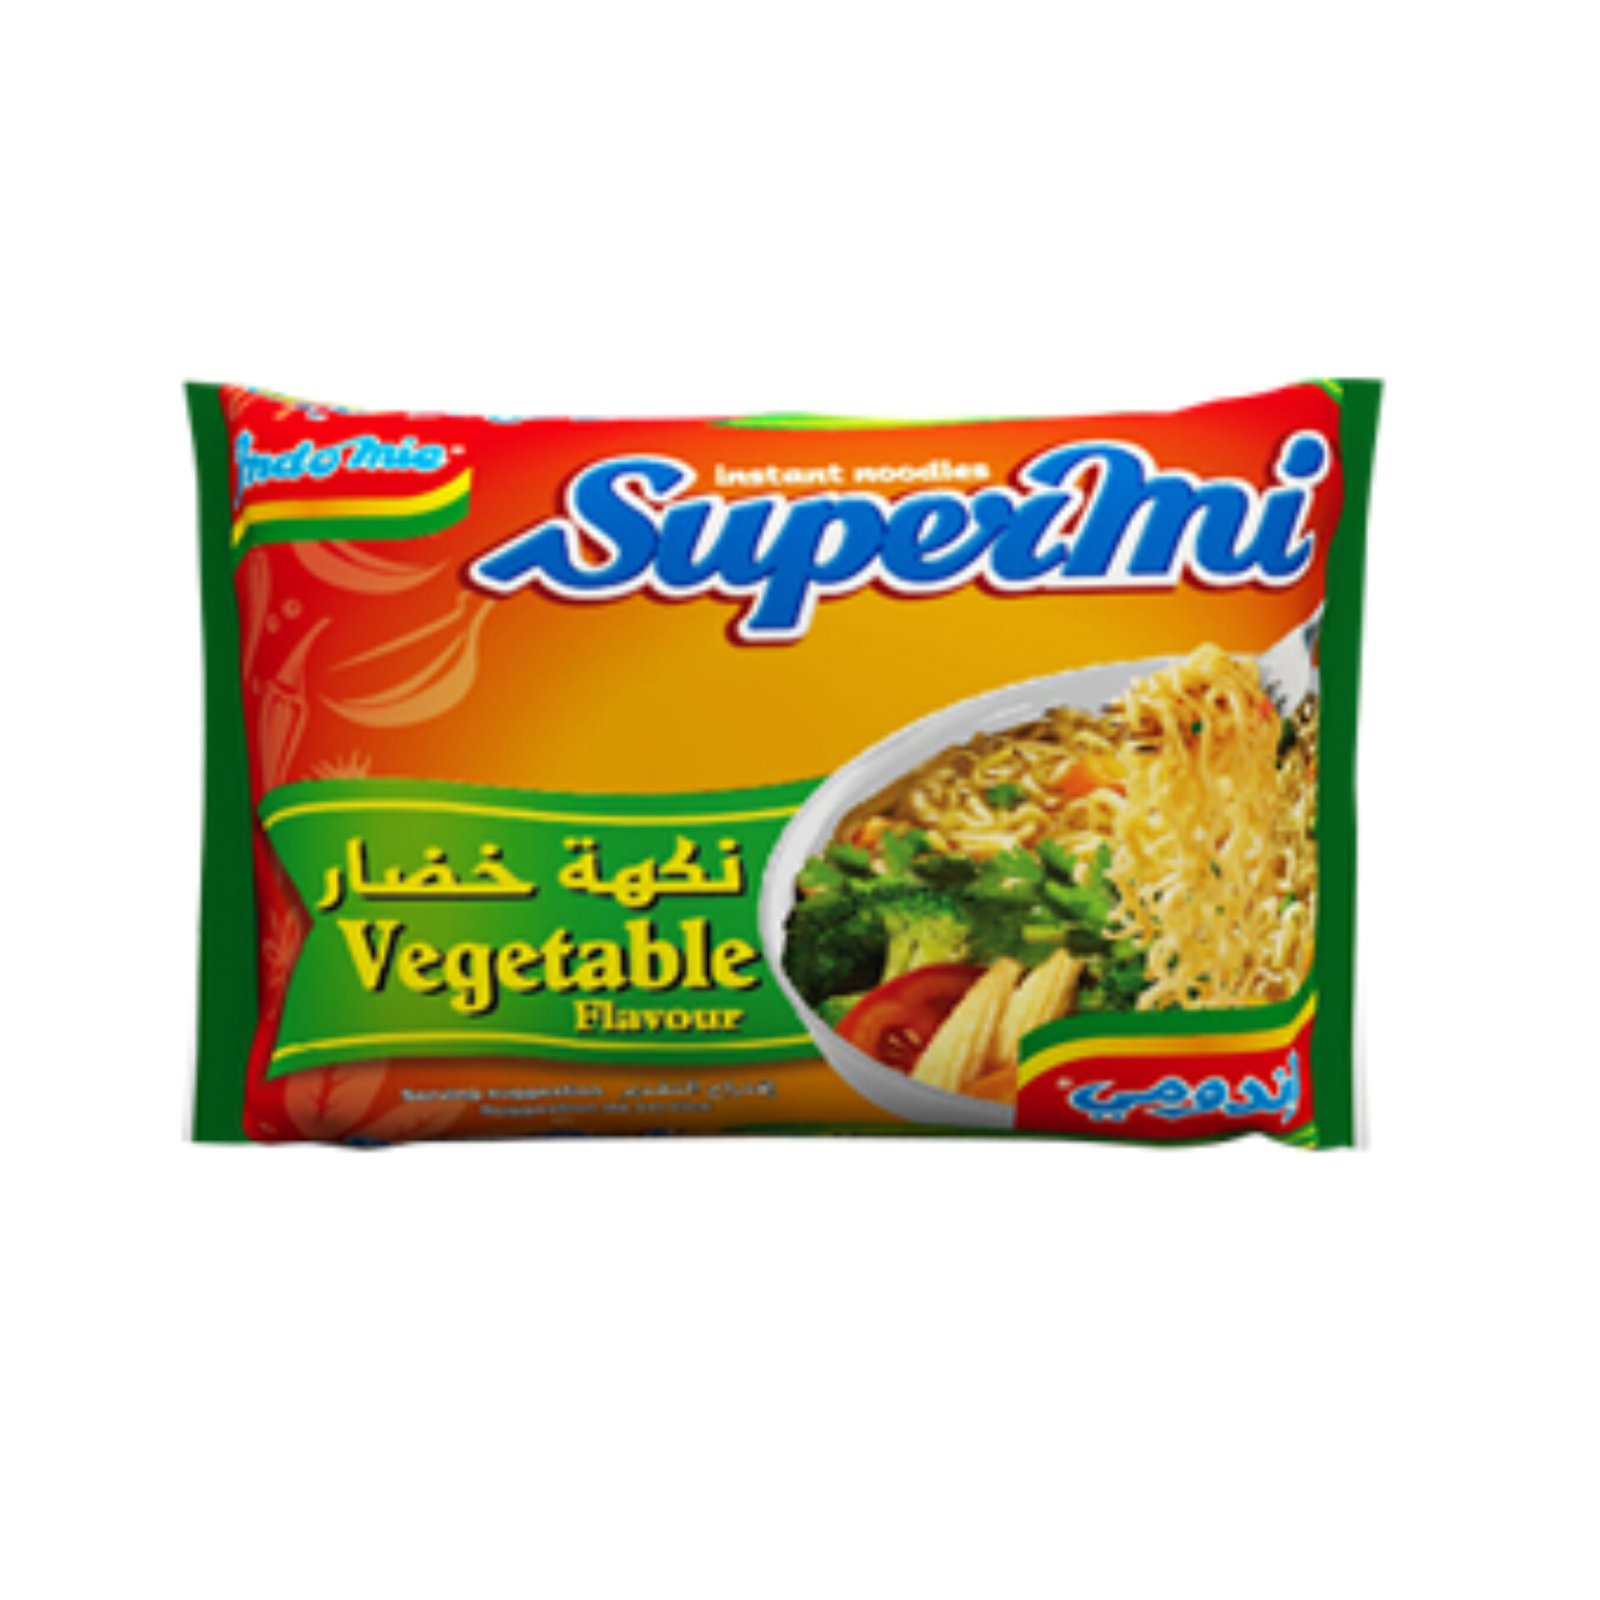 Indomie supermie instant noodles 1 box